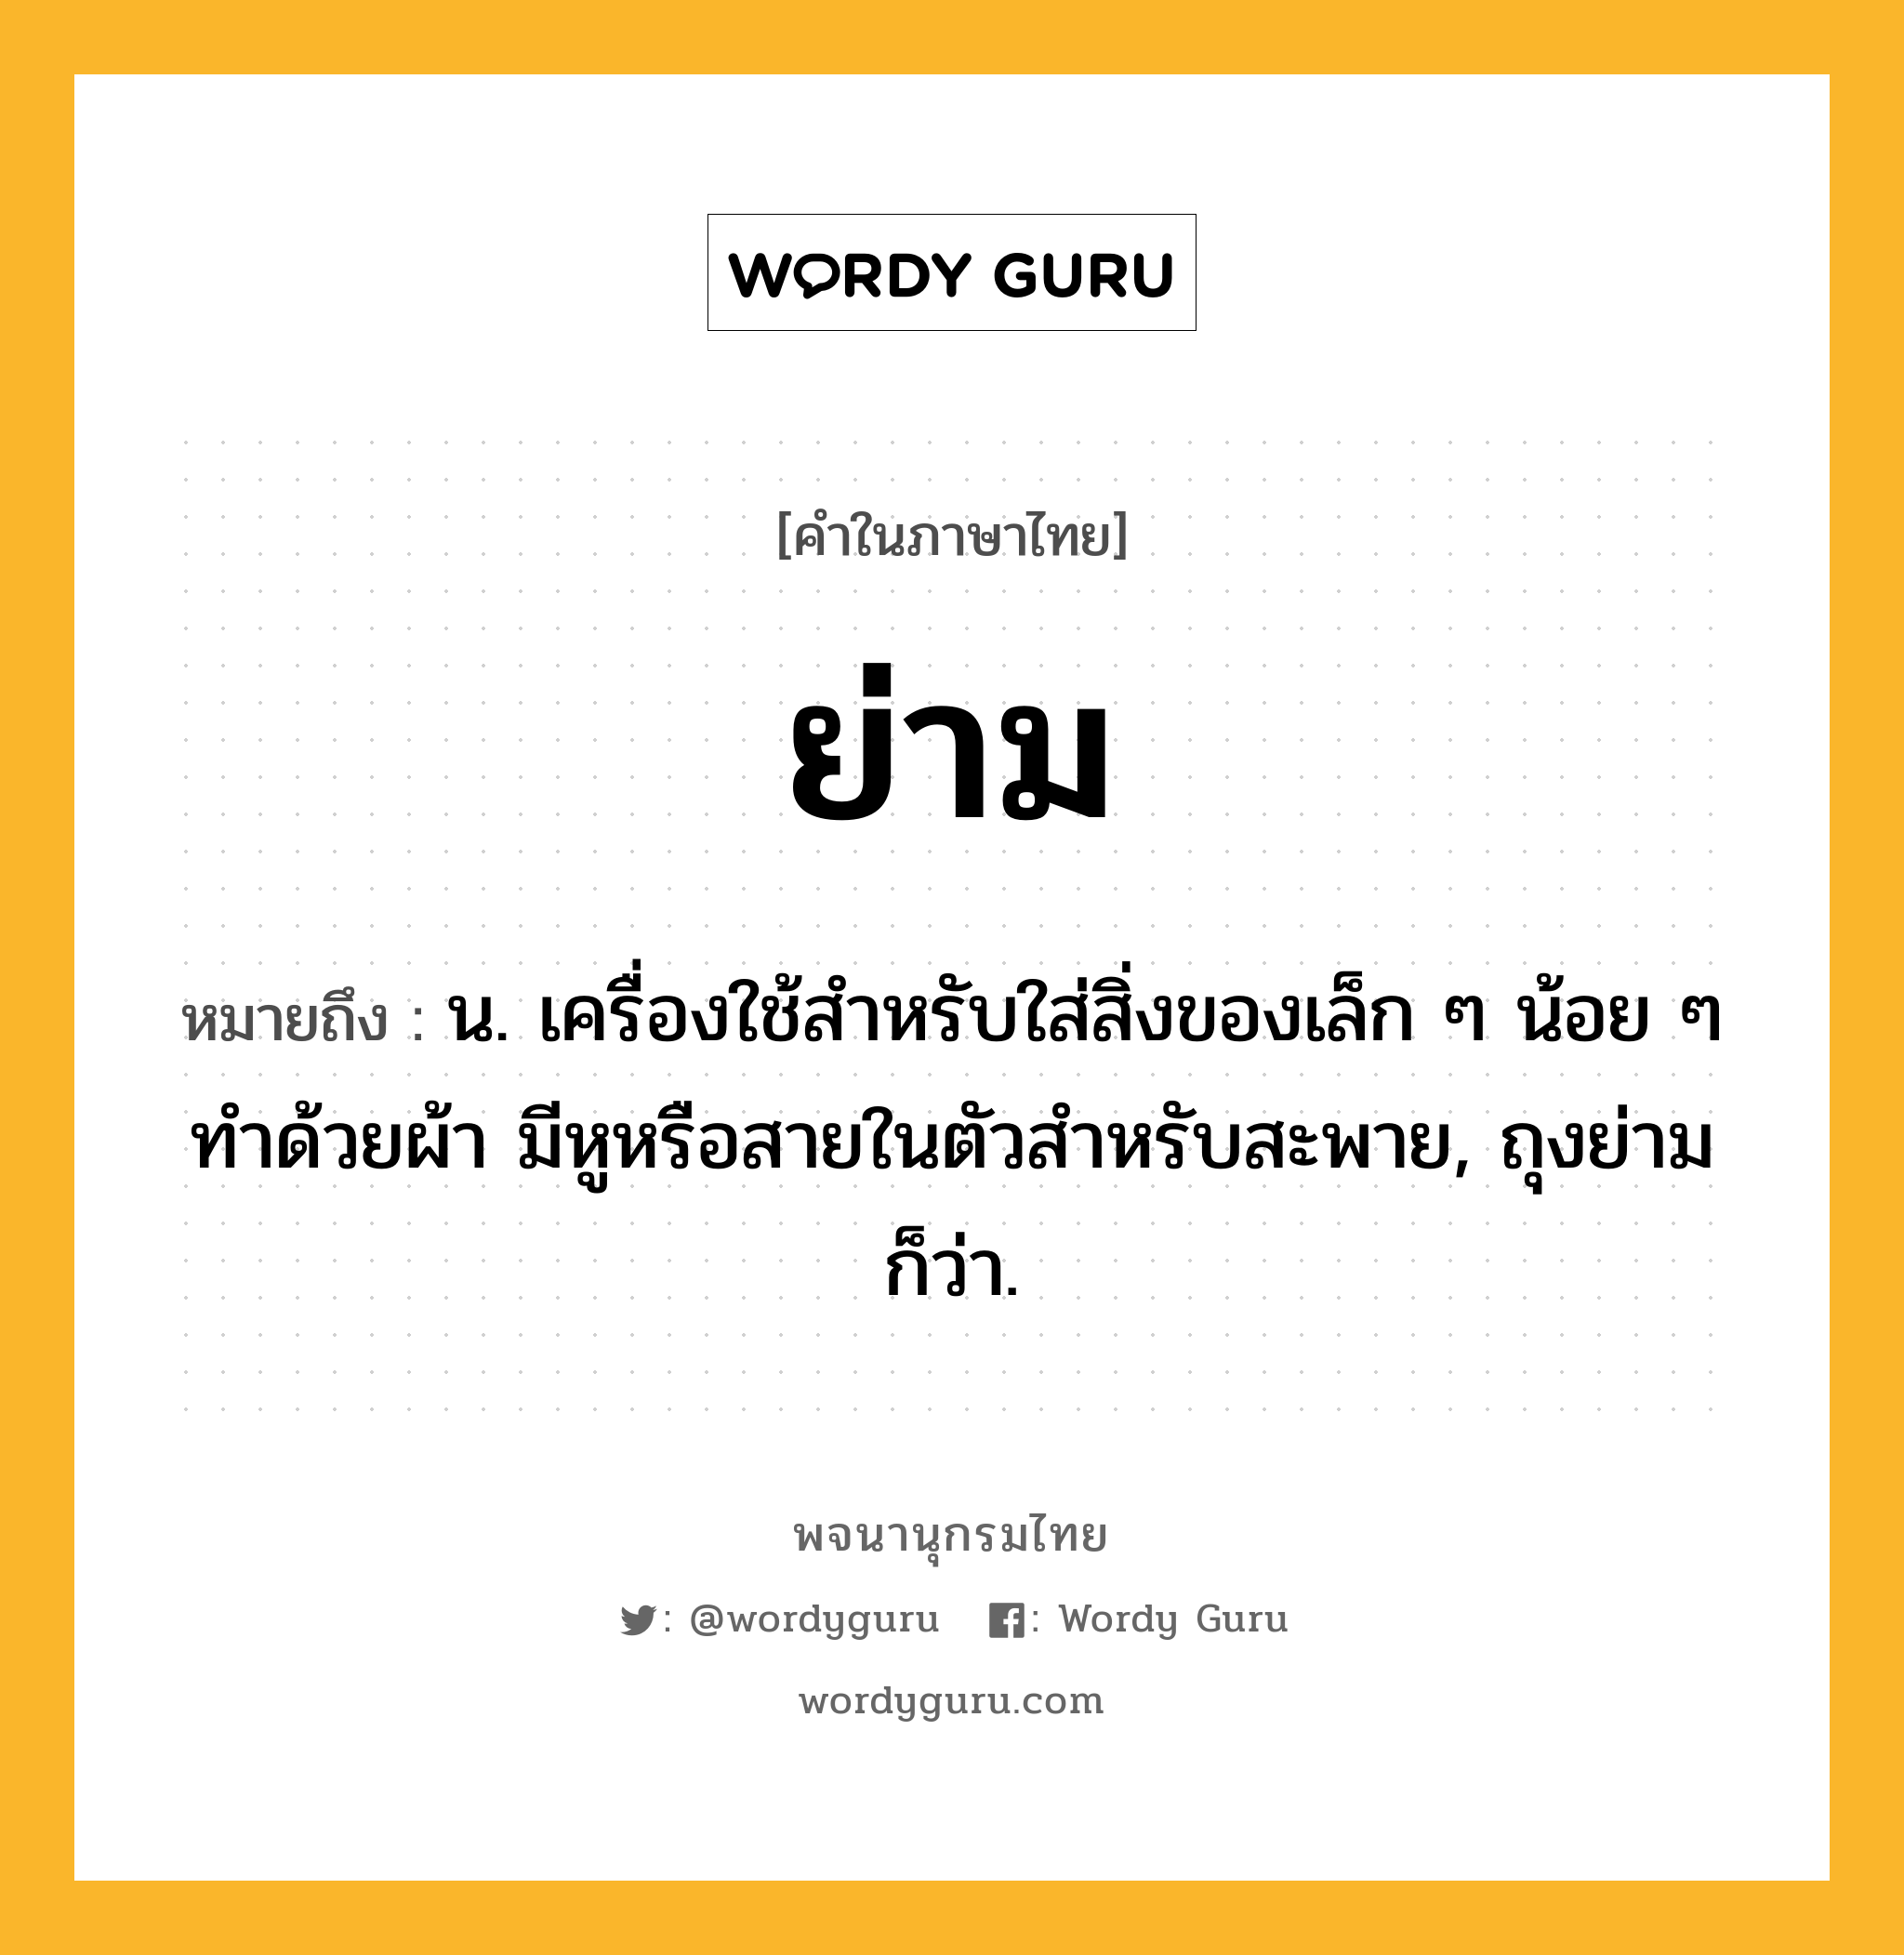 ย่าม ความหมาย หมายถึงอะไร?, คำในภาษาไทย ย่าม หมายถึง น. เครื่องใช้สําหรับใส่สิ่งของเล็ก ๆ น้อย ๆ ทําด้วยผ้า มีหูหรือสายในตัวสําหรับสะพาย, ถุงย่าม ก็ว่า.